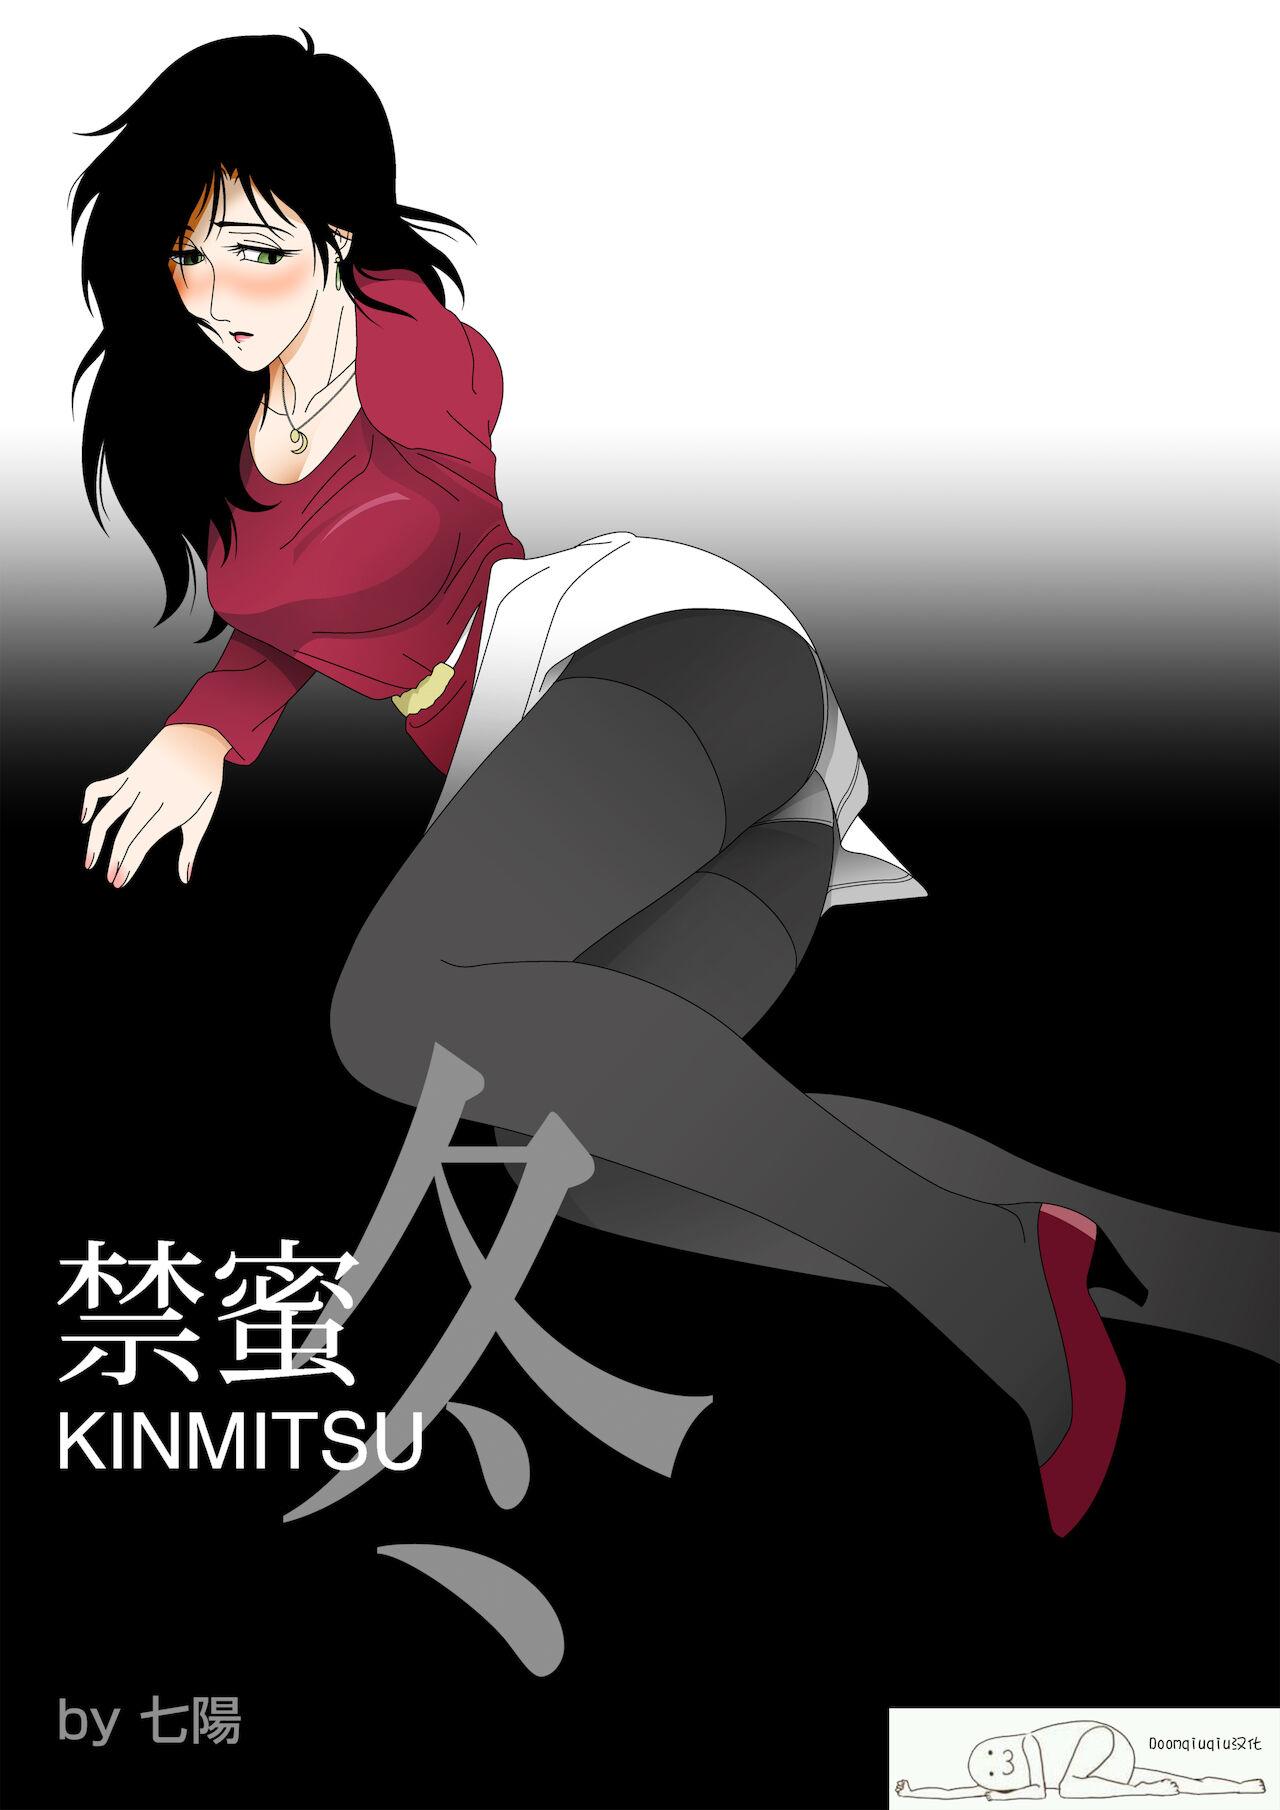 Kinmitsu ~ Fuyu 0